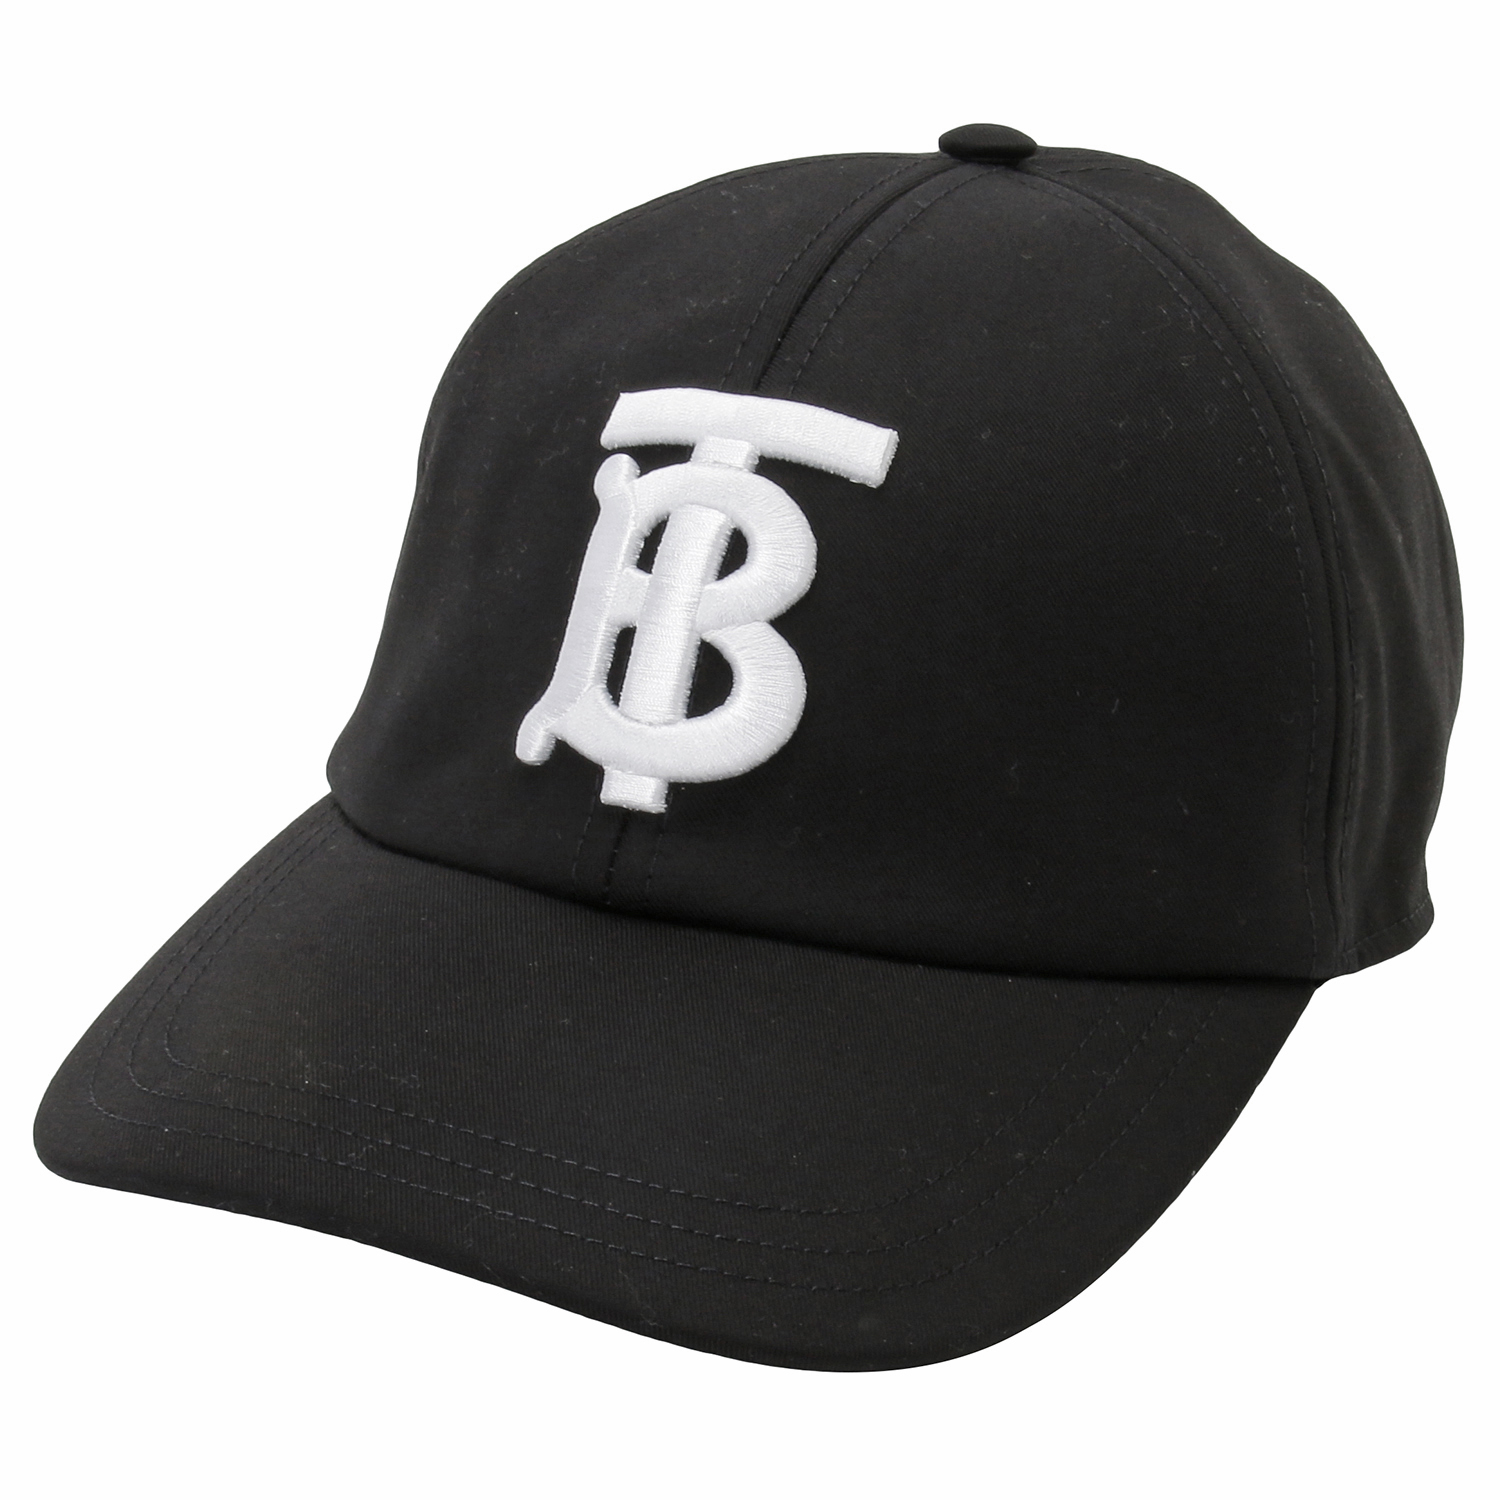 バーバリー BURBERRY 8068033 A6590 M TBロゴ モノグラムロゴ コットンキャップ ベースボールキャップ 帽子 Mサイズ ブラック/ホワイト メンズ レディース ユニセックス MH TB EMB BASEBALL CAP